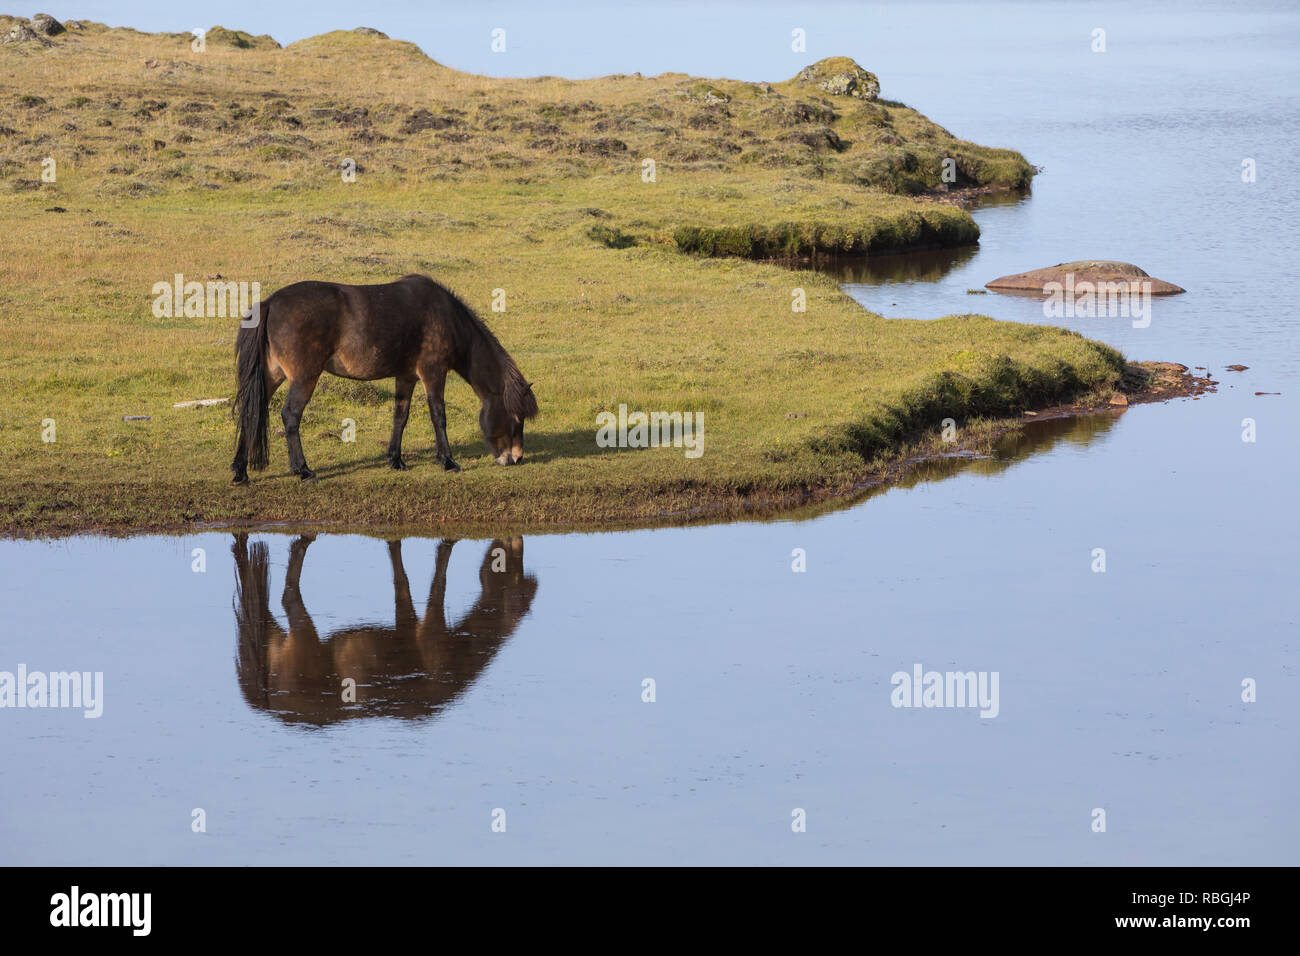 Islandpferd, Isländer, Islandpony, Island-Pferd, Isländer, Island-Pony, Pony, Ponies, Wasserspiegelung, Spiegelung, auf Island, Icelandic horse, Icela Stock Photo